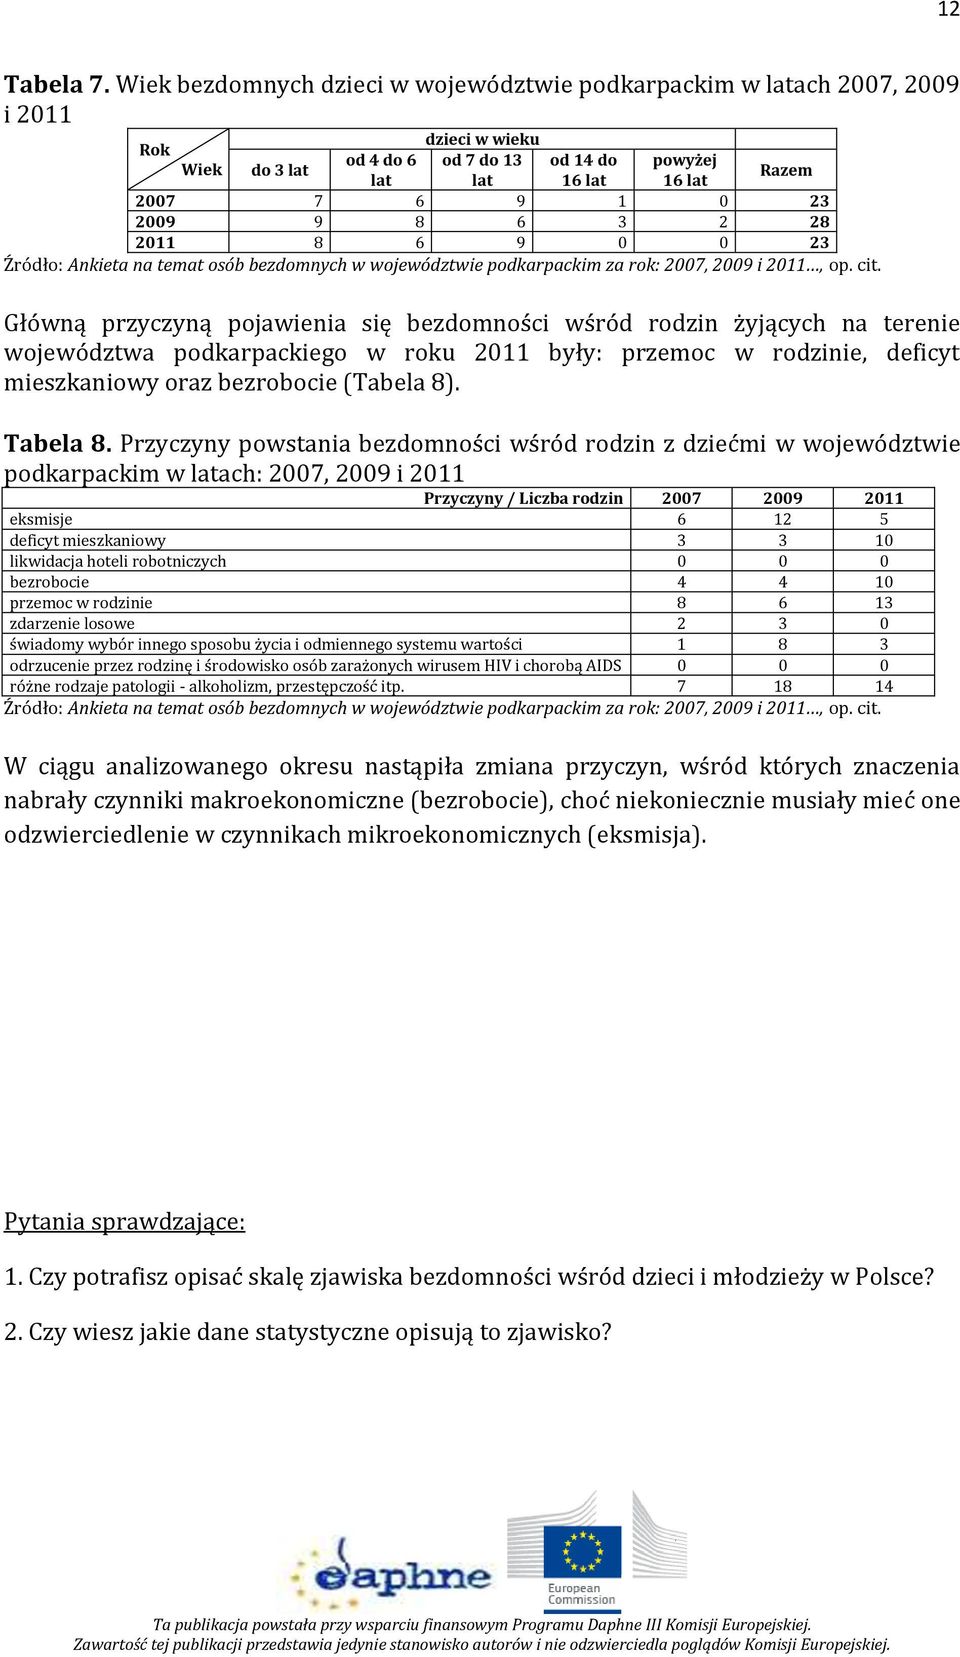 9 8 6 3 2 28 2011 8 6 9 0 0 23 Źródło: Ankieta na temat osób bezdomnych w województwie podkarpackim za rok: 2007, 2009 i 2011, op. cit.